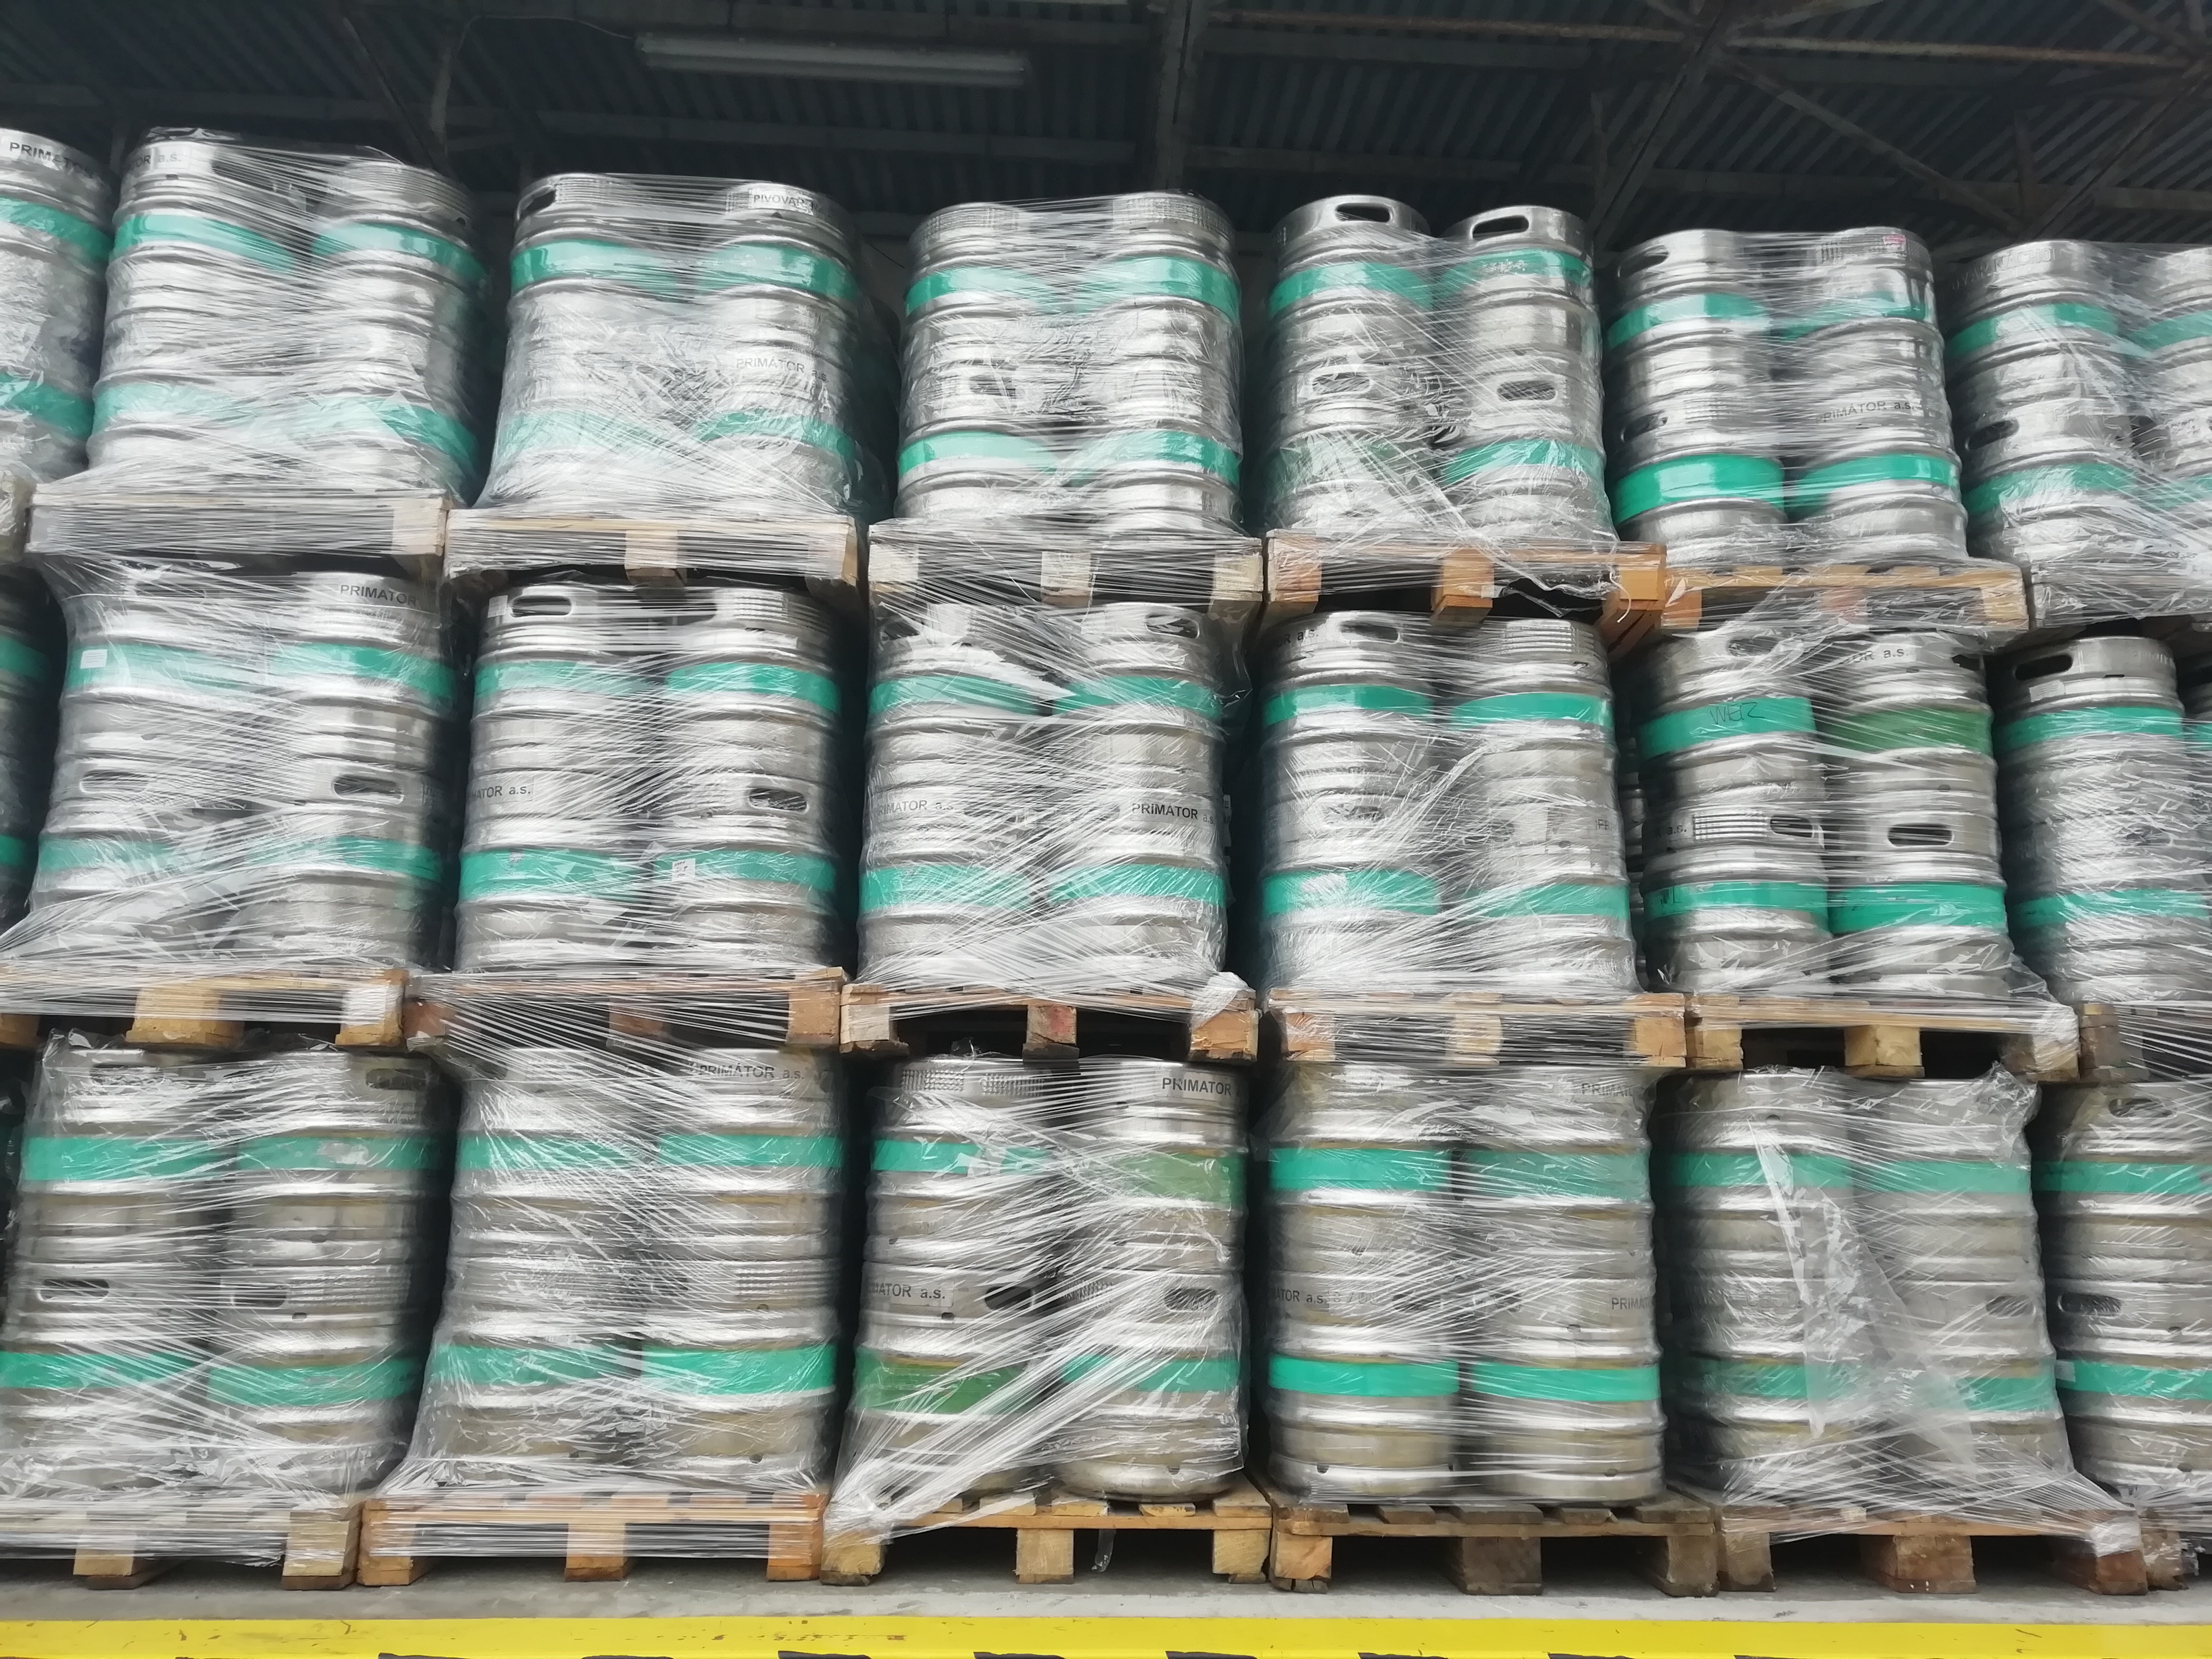 Pivovaru PRIMÁTOR se daří exportovat  - vyvezl rekordních 46 tisíc hektolitrů